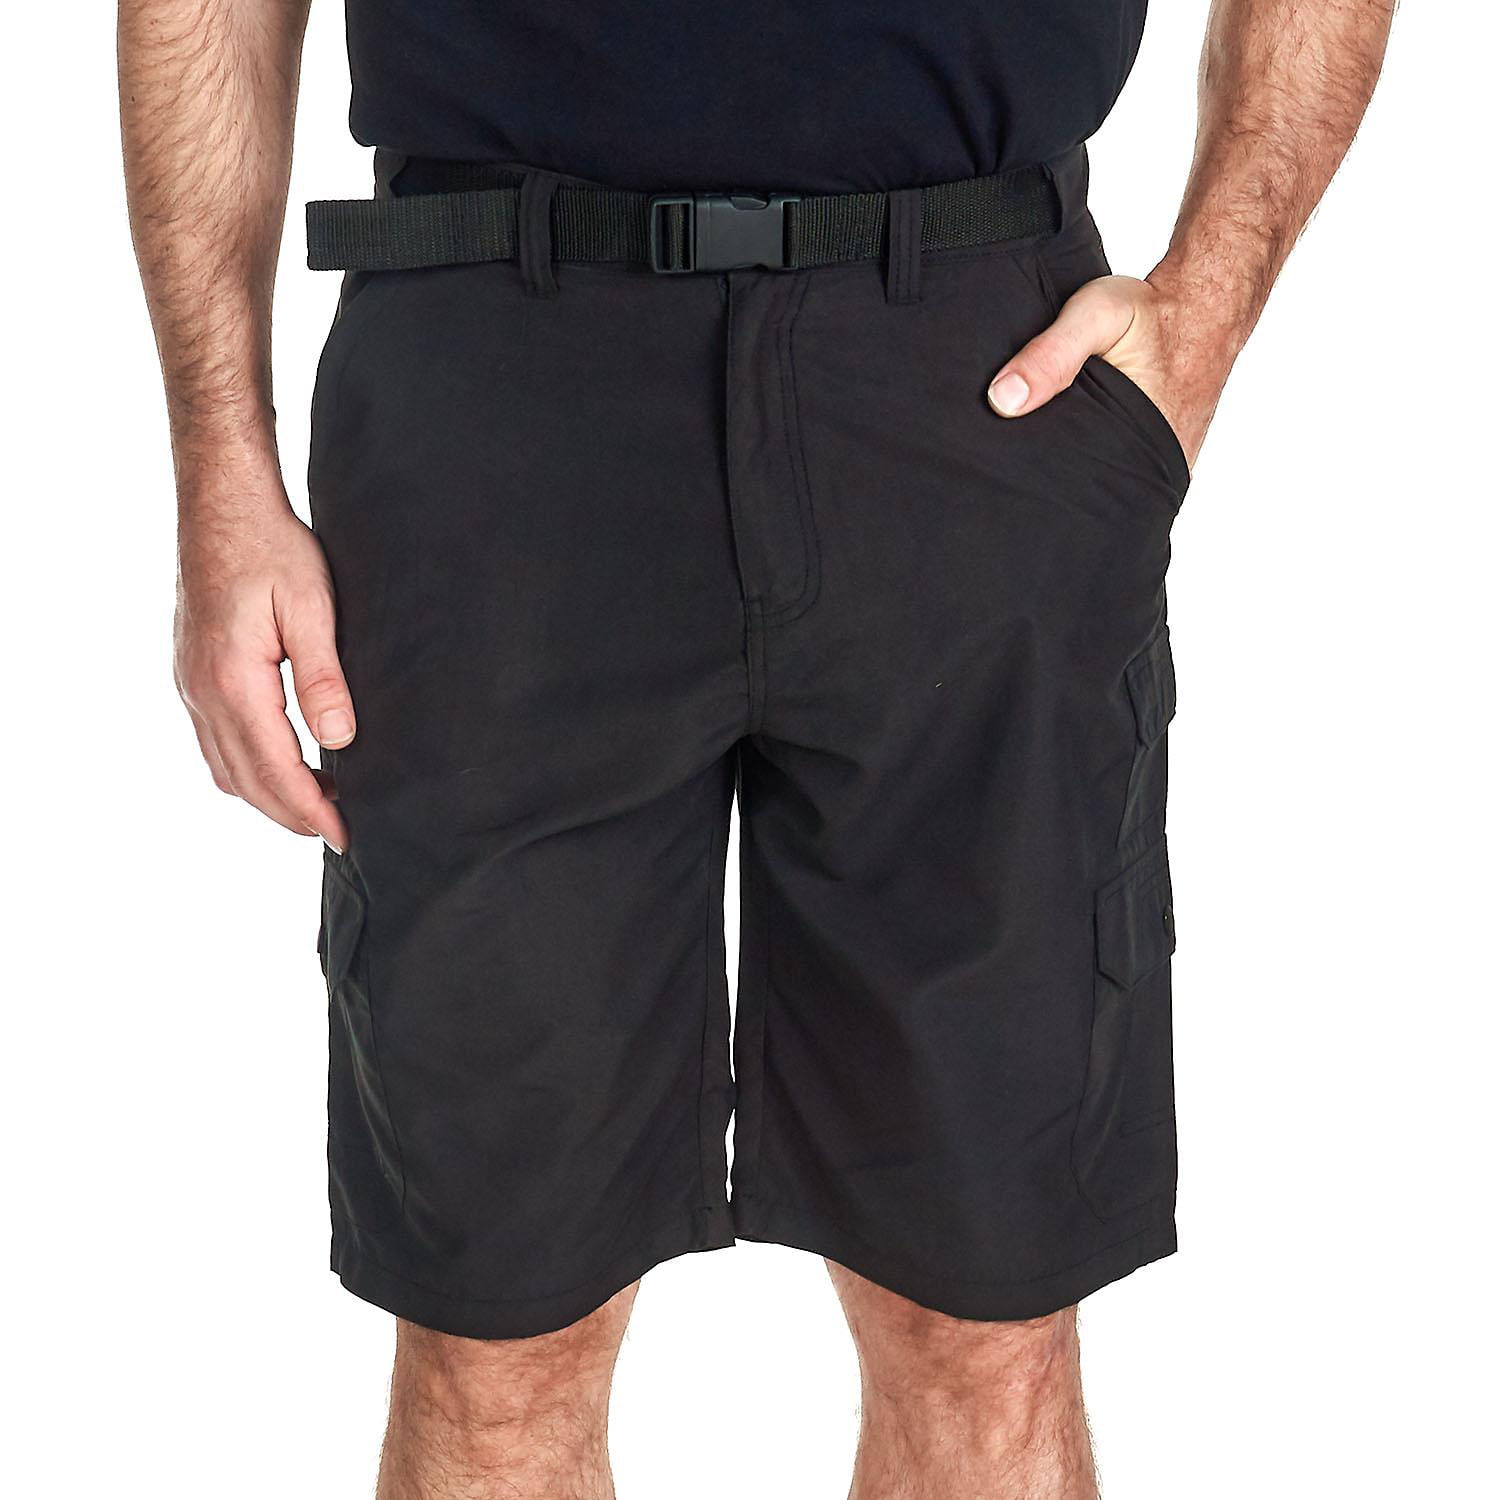 denali shorts